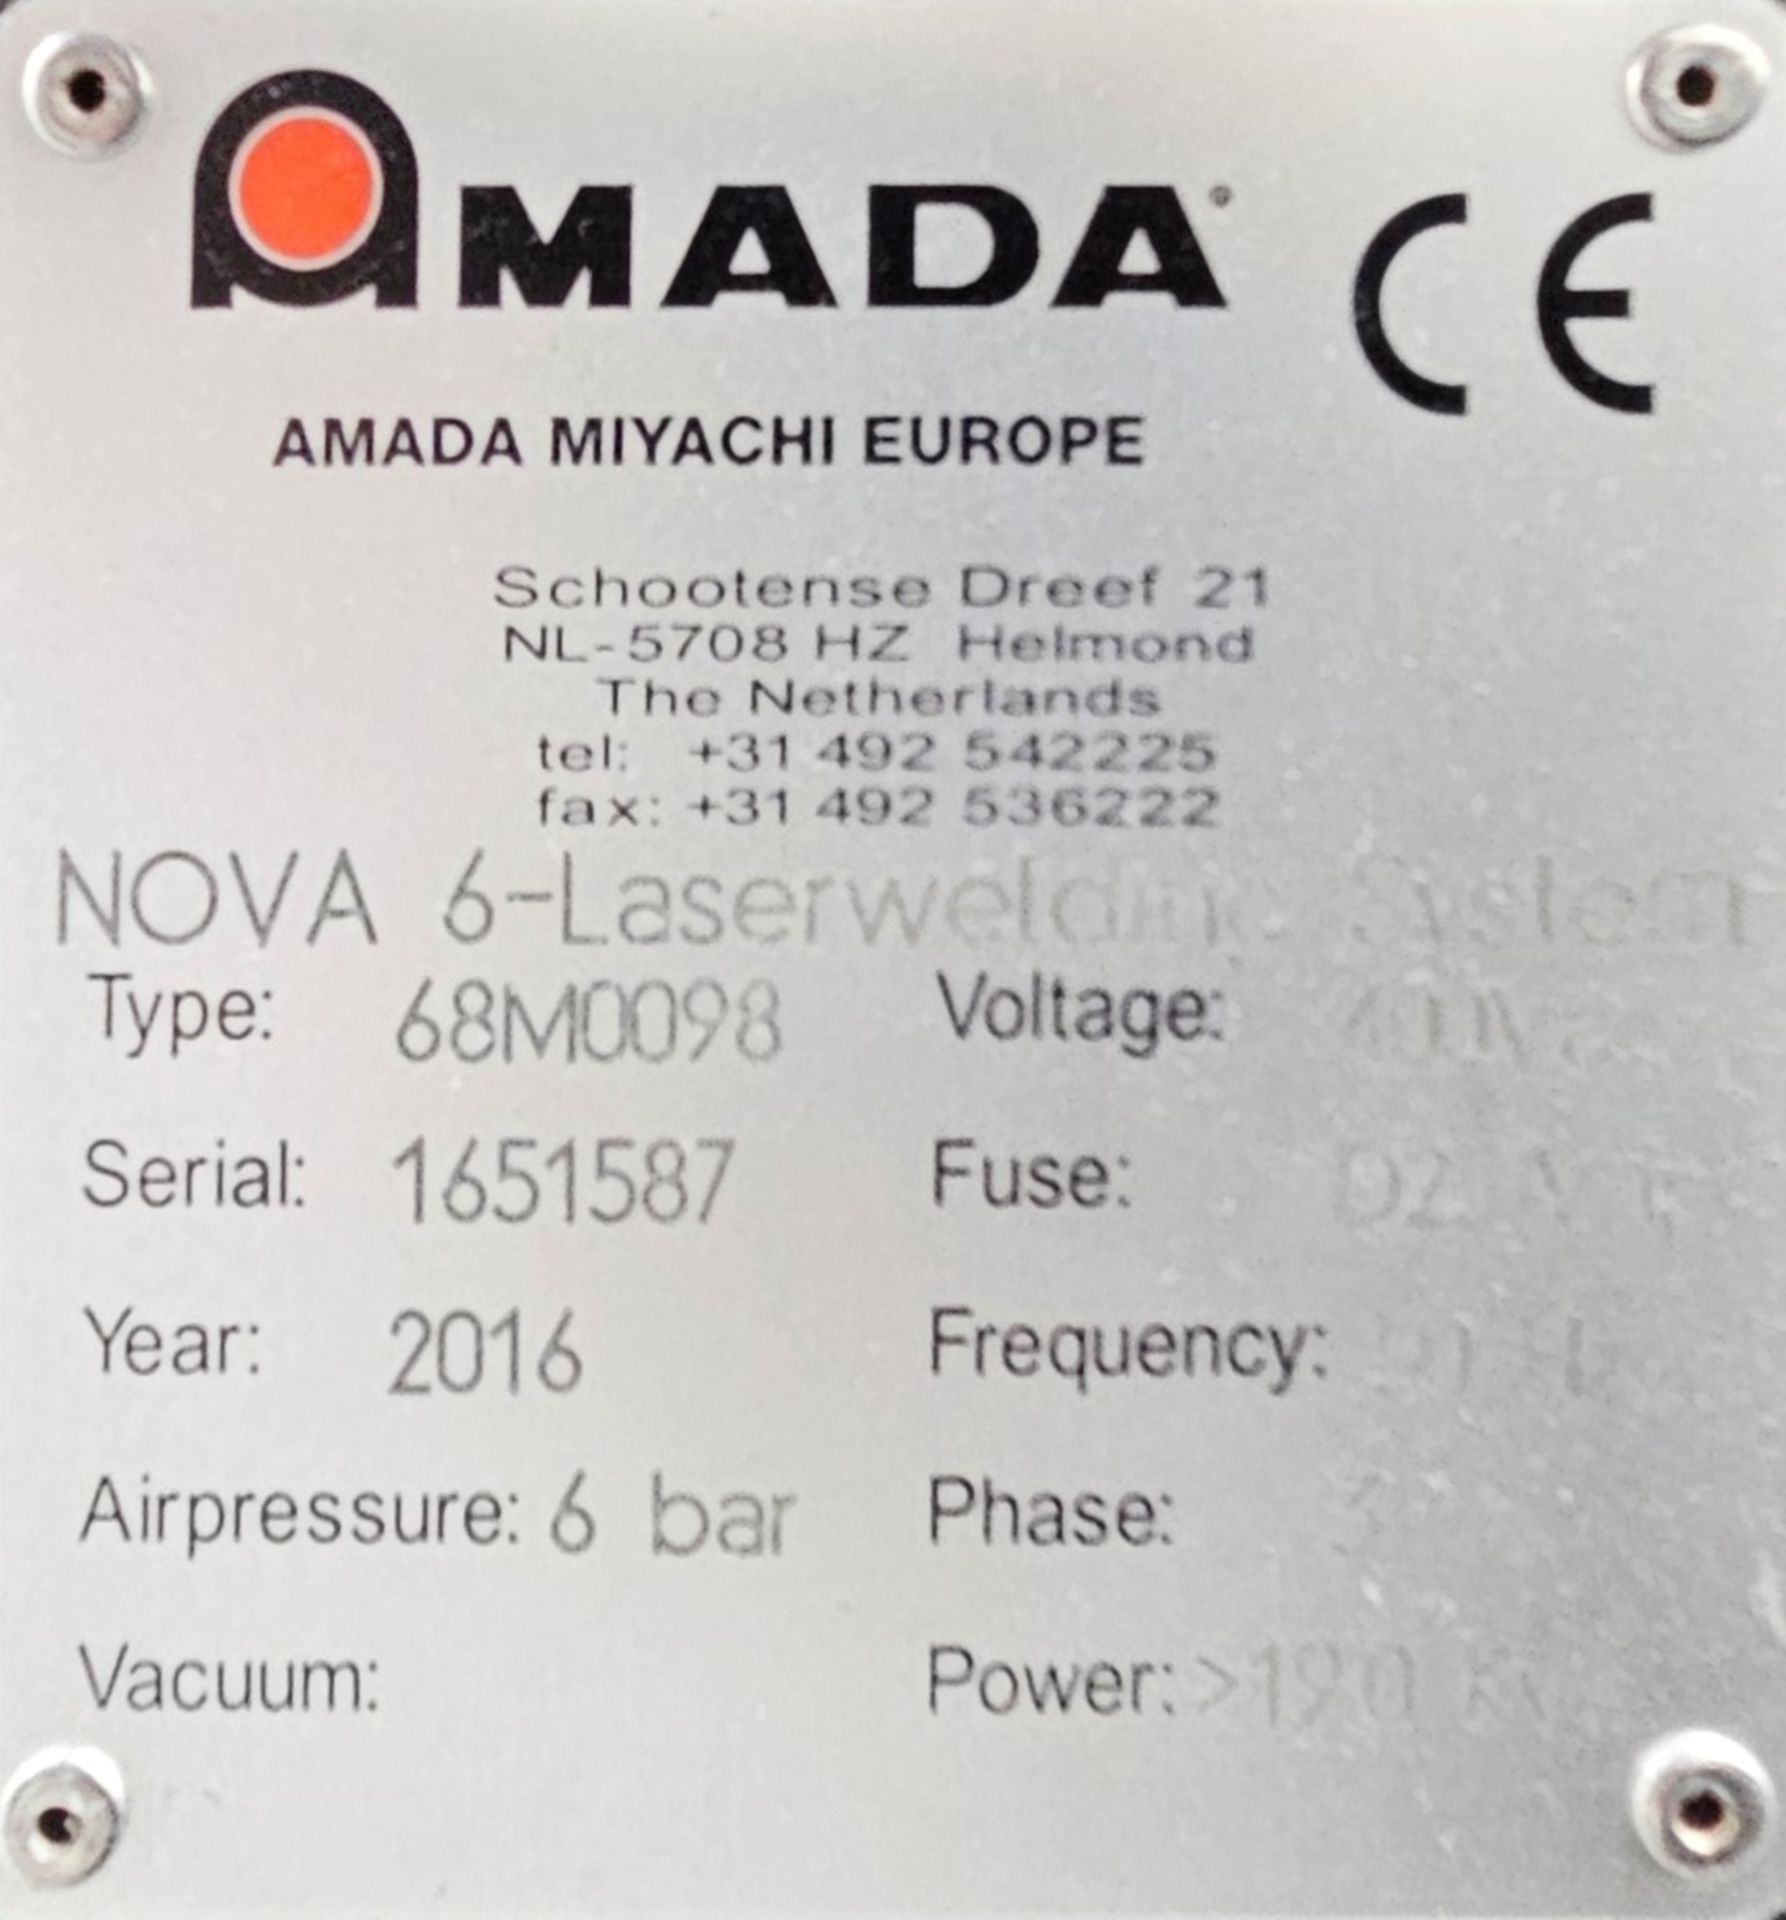 1 x Amada Miyachi Nova 6 Laser CNC Welding Workstation System - Type: 68M0098 - Year: 2016 - Image 7 of 20